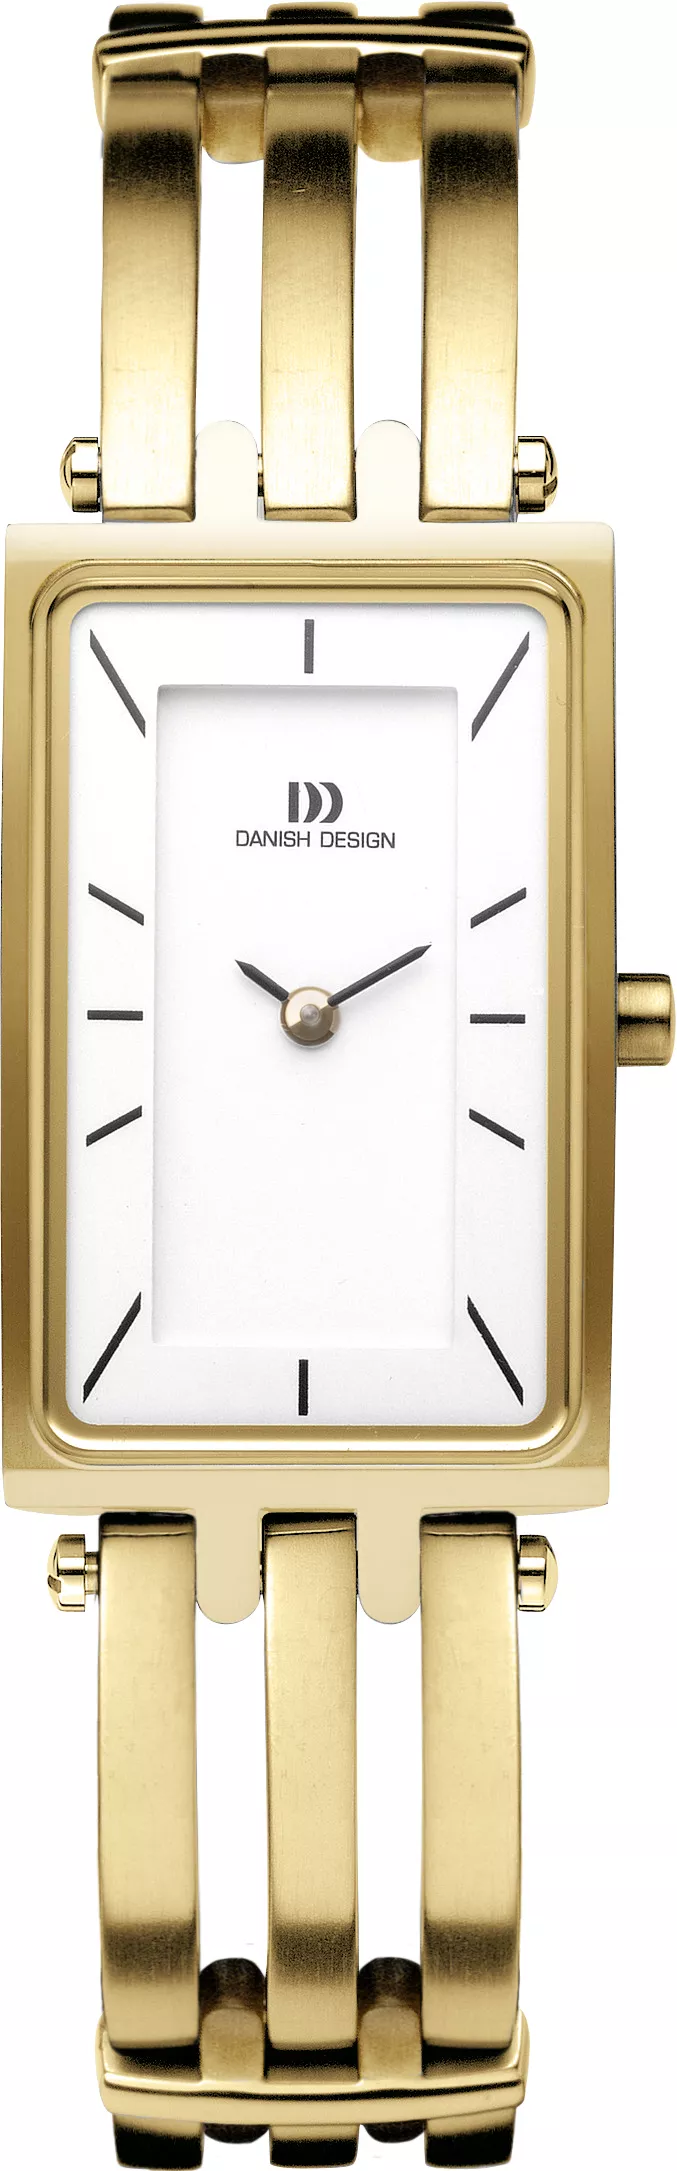 Danish Design Horloge 20/30 mm Titanium IV05Q663